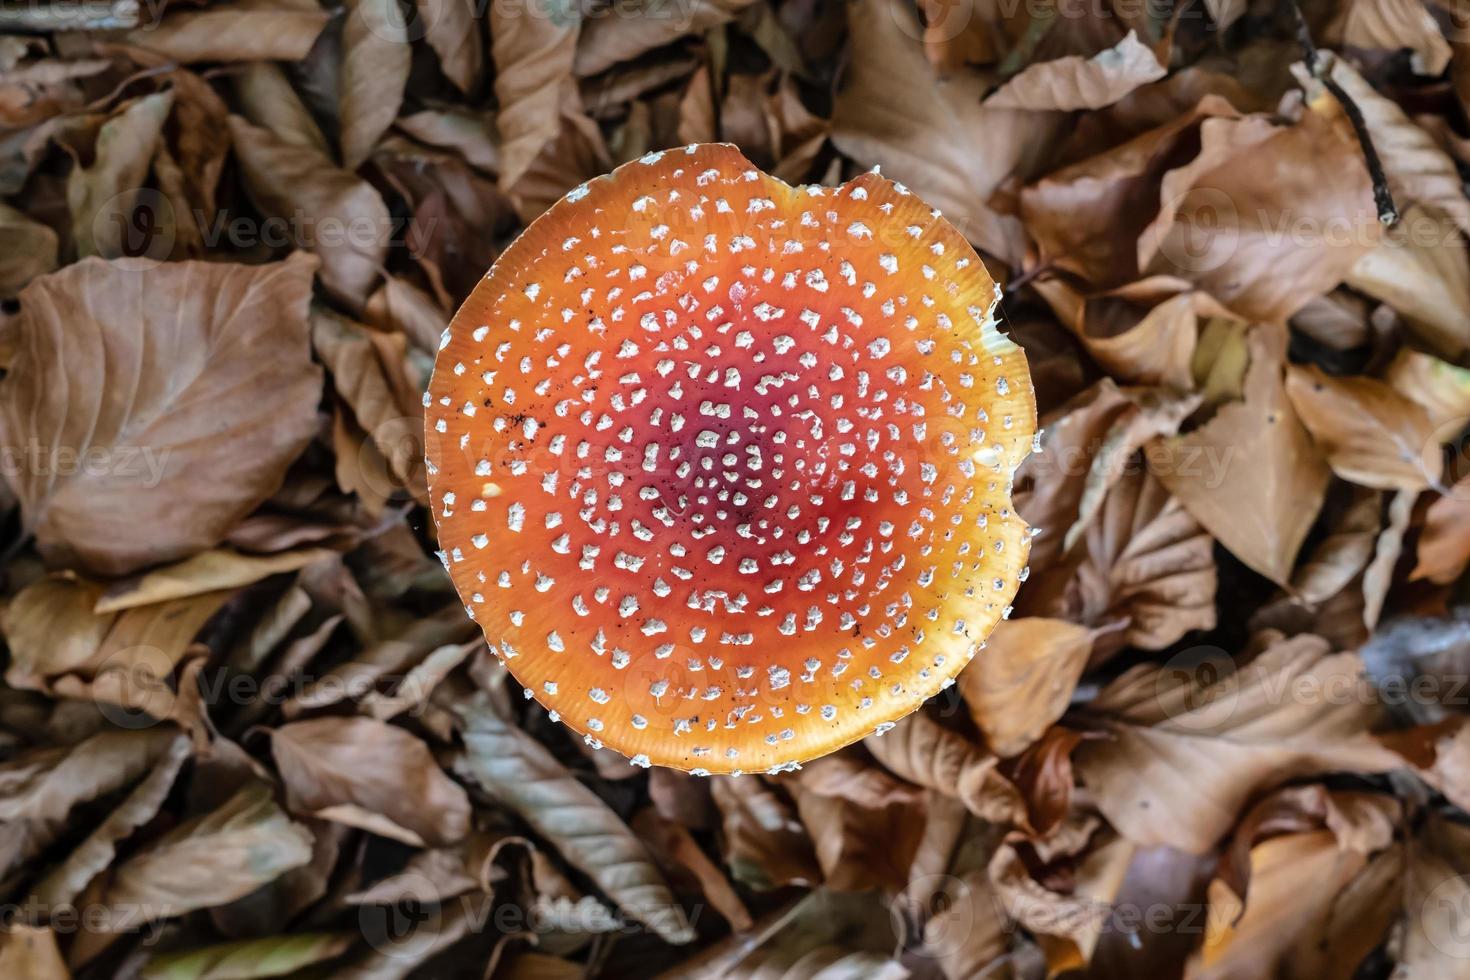 primer plano de hongos amanita muscaria en hojas secas. hongo venenoso con una hermosa gorra roja con manchas blancas. vista superior. foto